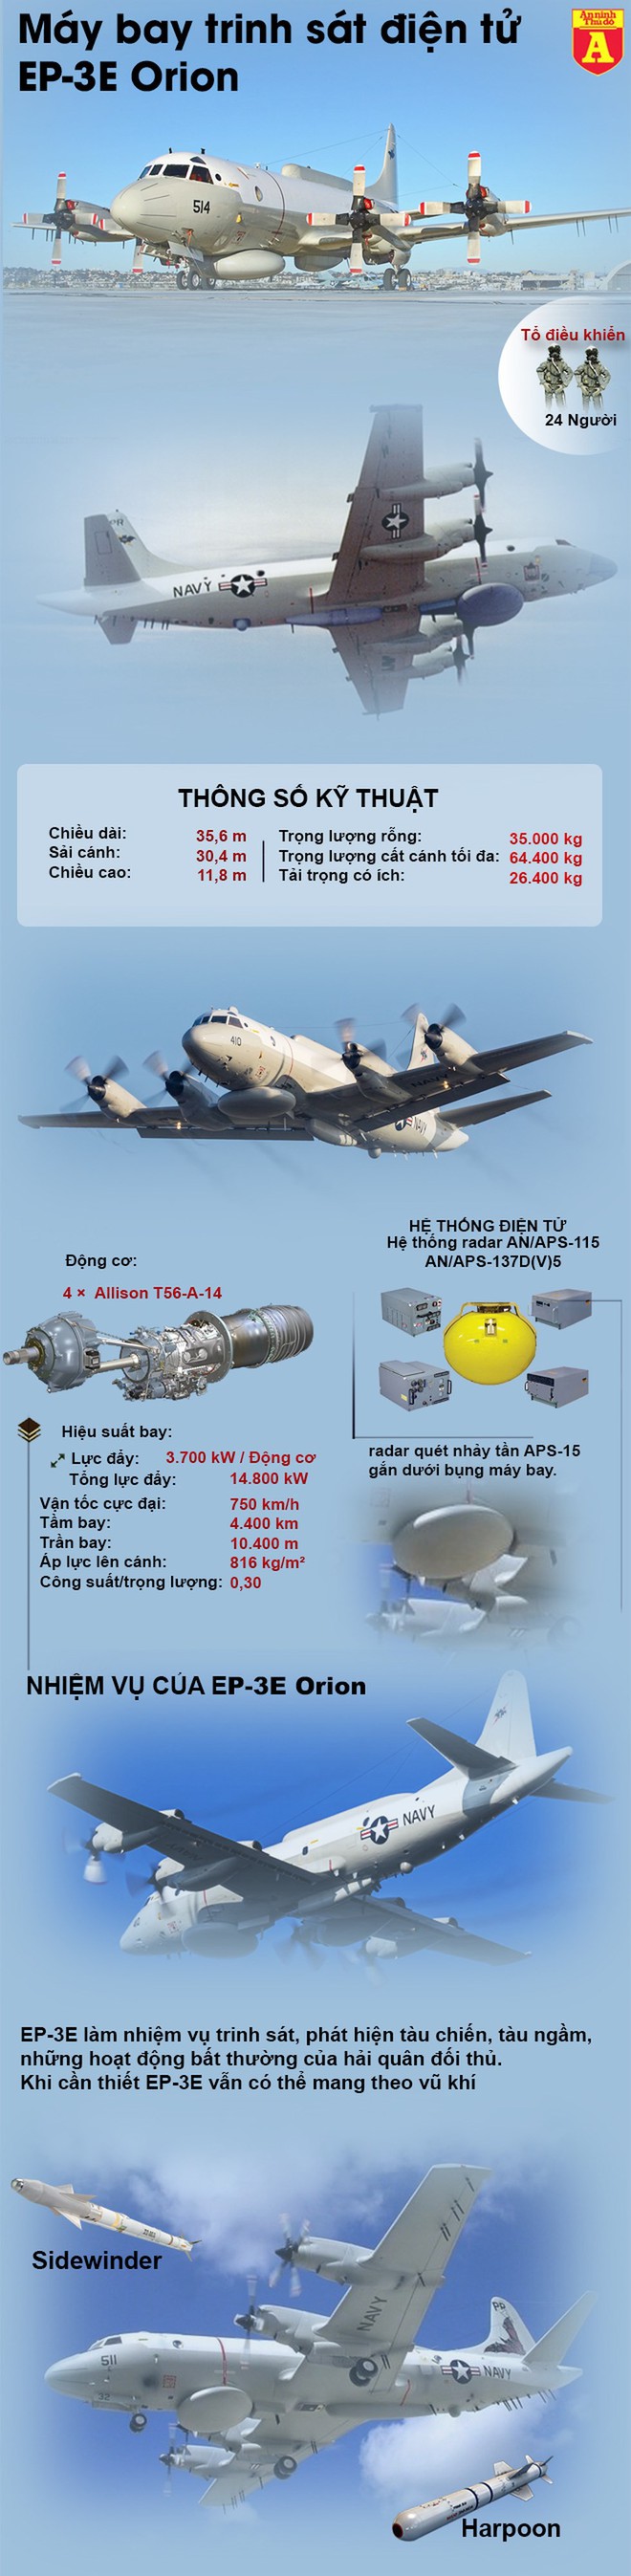 Hé lộ thông tin máy bay quân sự Mỹ vừa bị Su-30MK2 của Venezuela áp sát - Ảnh 1.